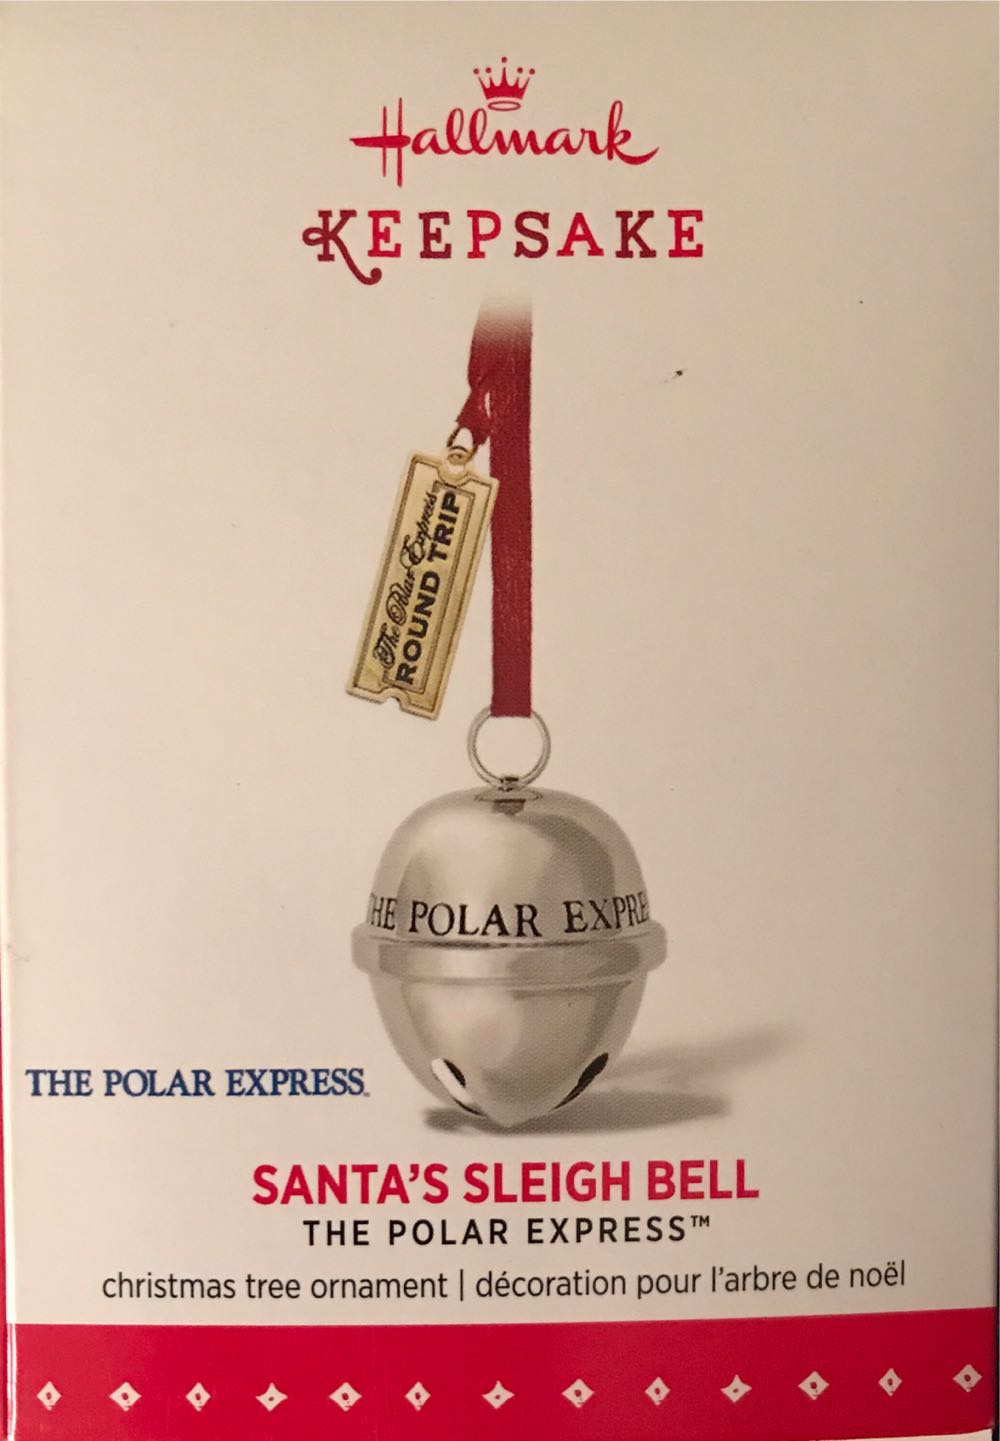 Polar Express Santa’s Sleigh Bell - The Polar Express (The Polar Express) ornament collectible [Barcode 795902491321] - Main Image 2